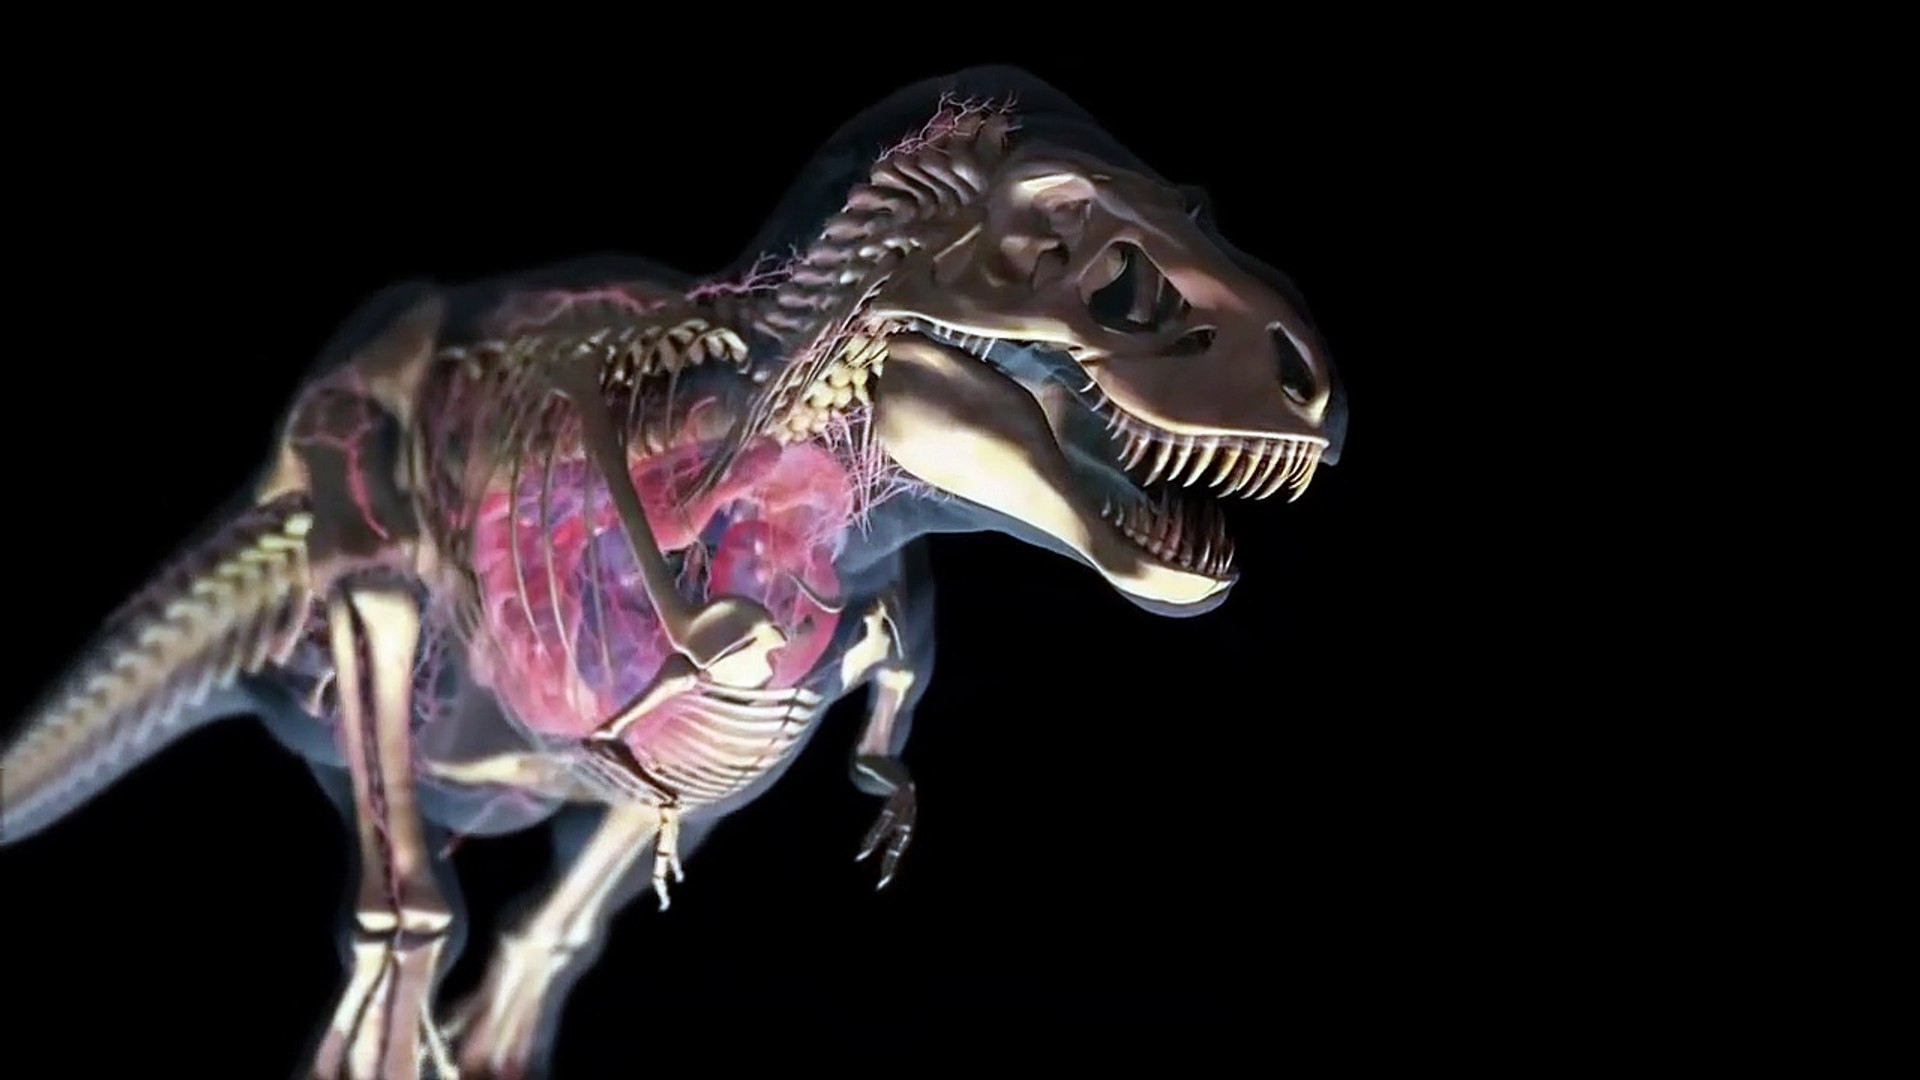 Caminhando com Dinossauros 3D, Trailer Dublado HD